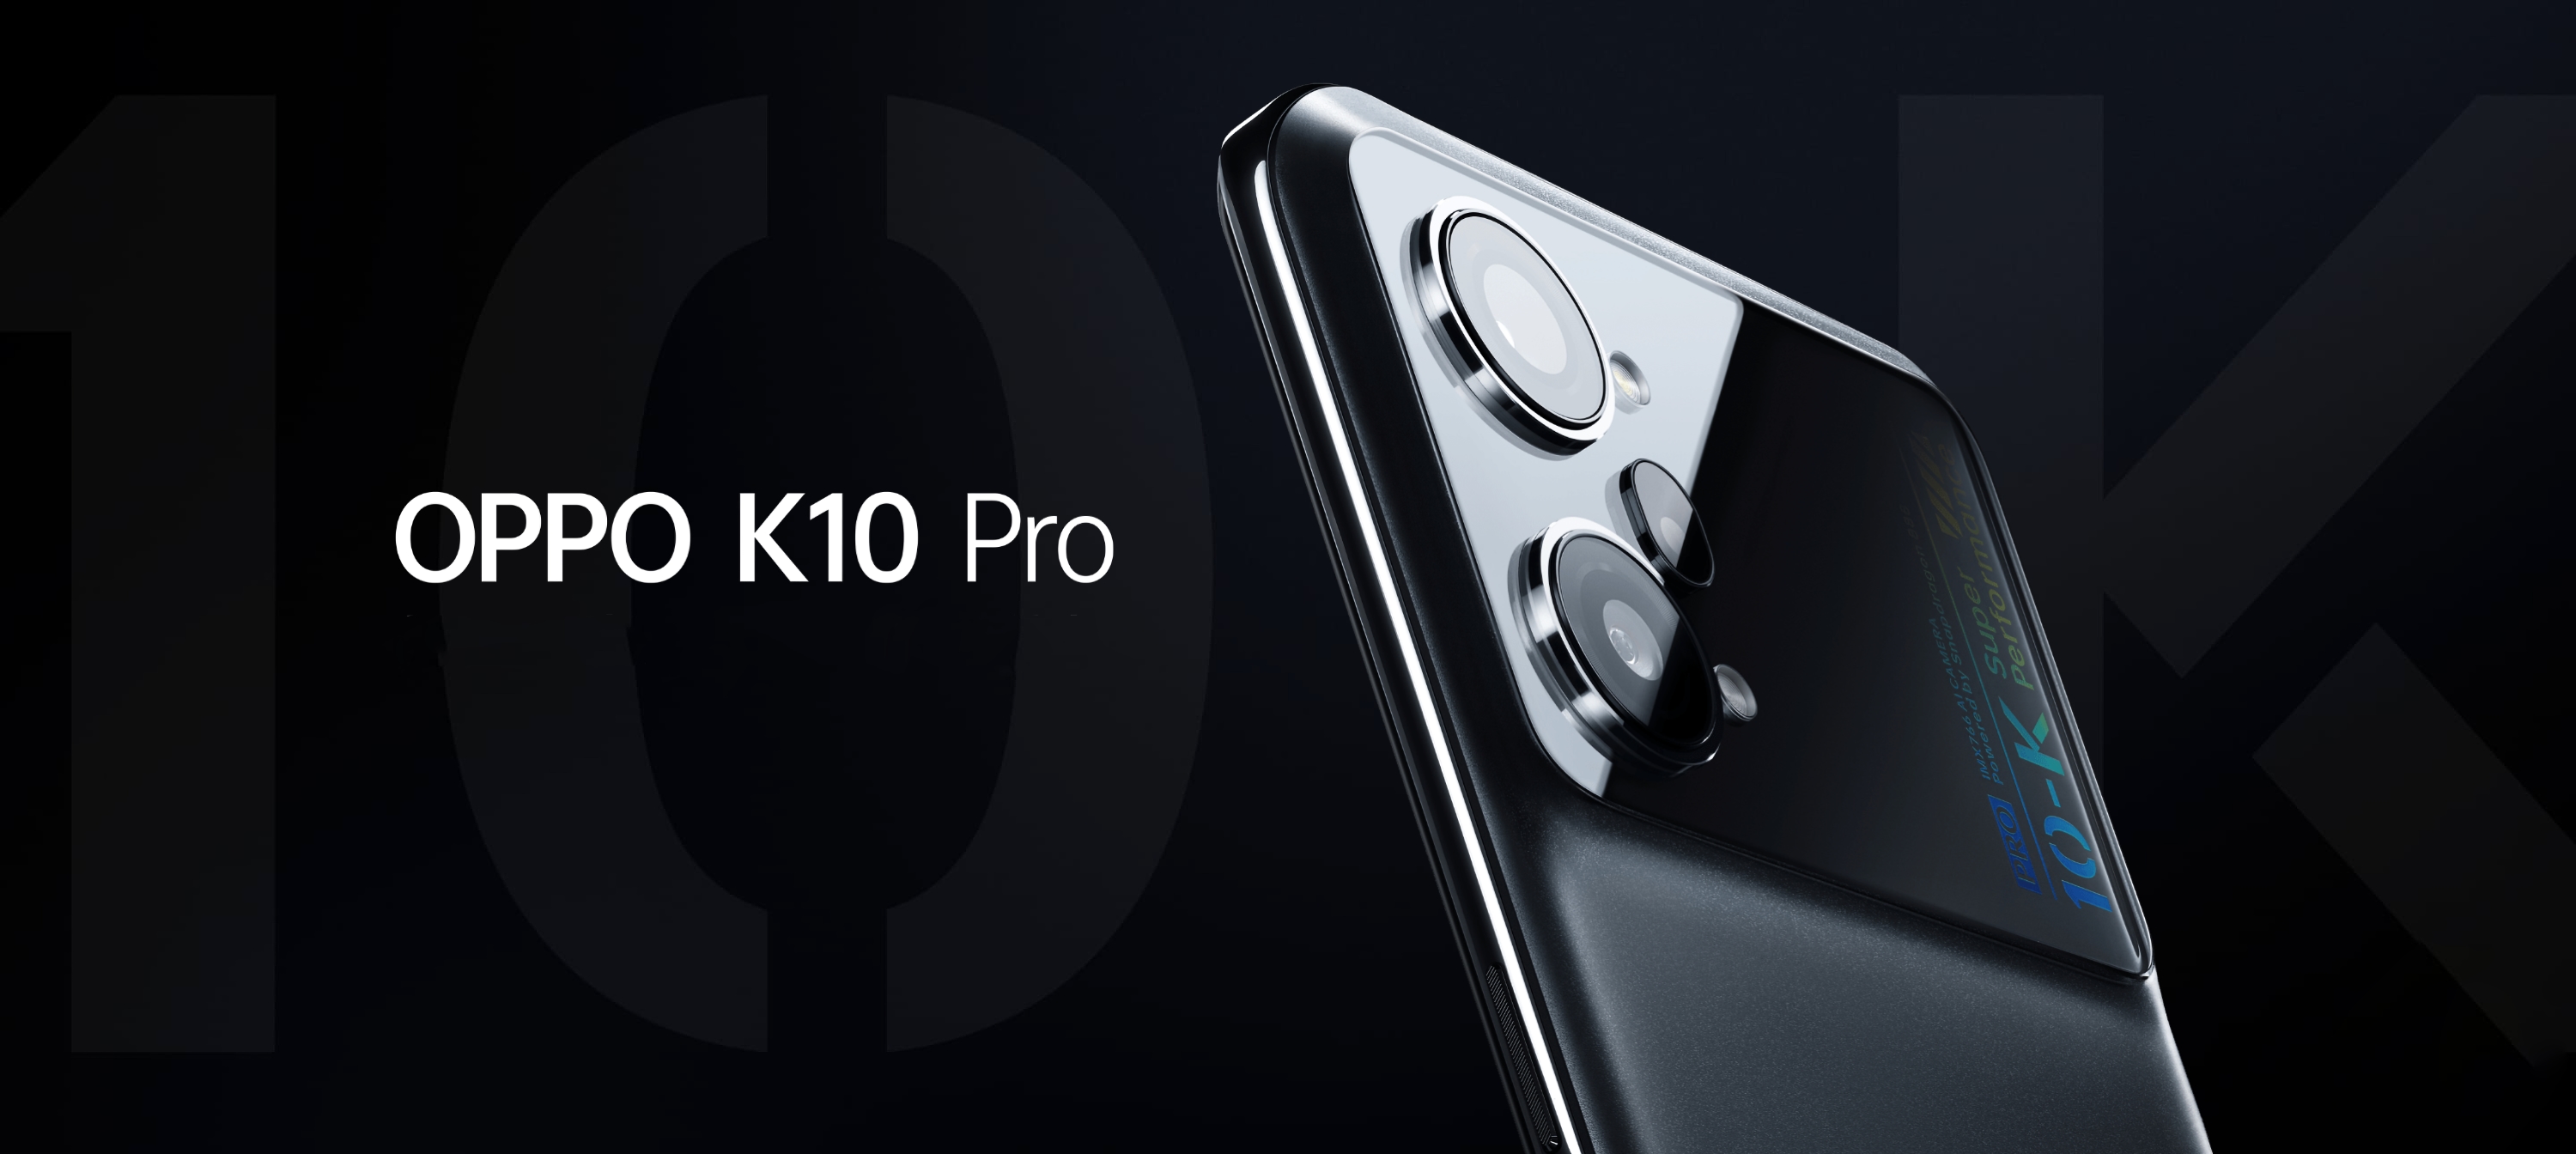 OPPO K10 Pro : écran AMOLED 120Hz, puce Snapdragon 888, triple caméra 50MP et charge rapide 80W pour 385$